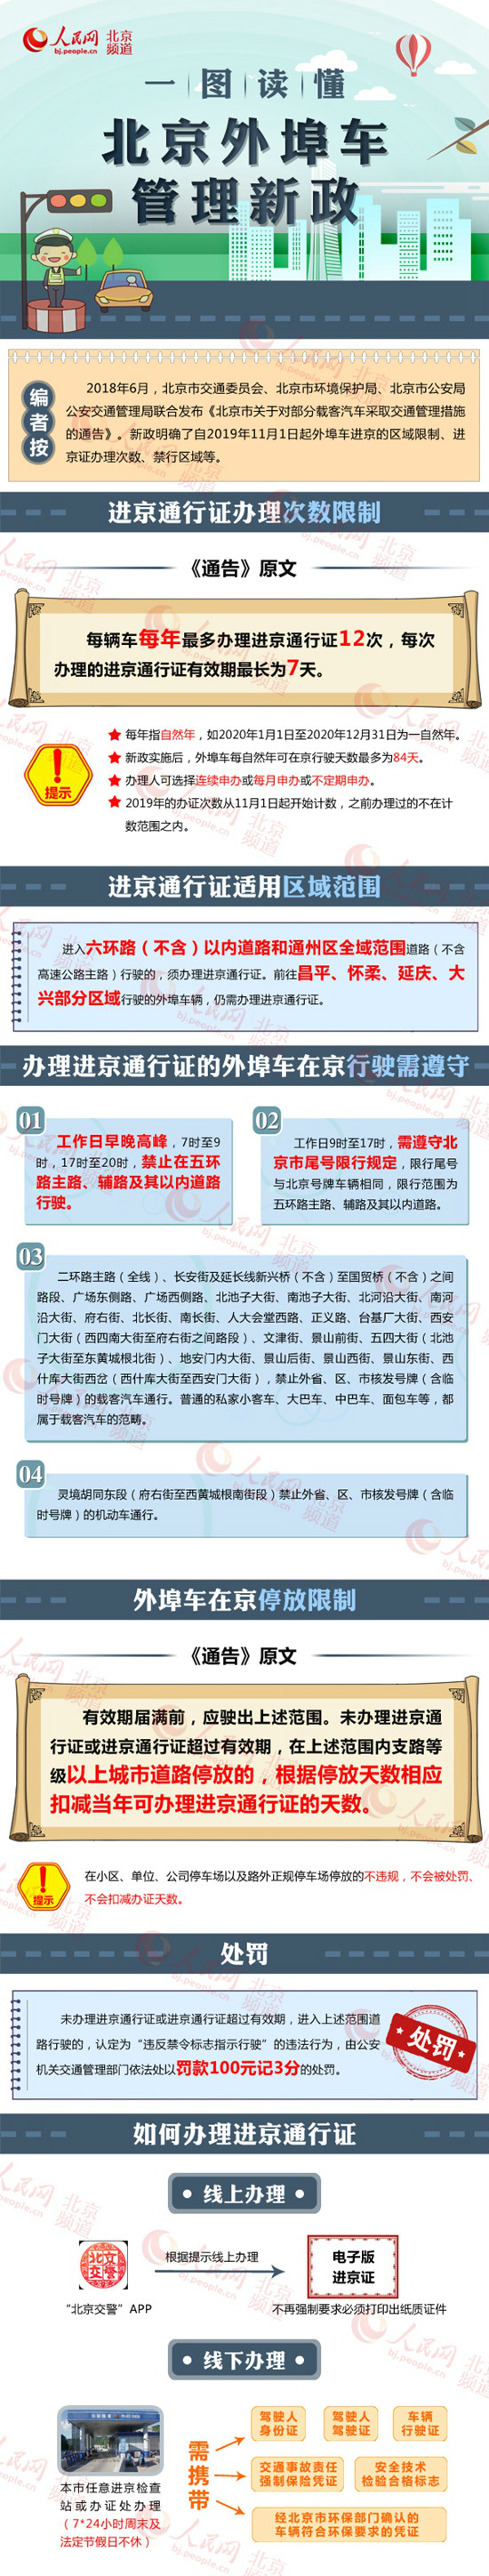 2019年11月起进京证办理限制次数、适用区域范围及外地车停放限制